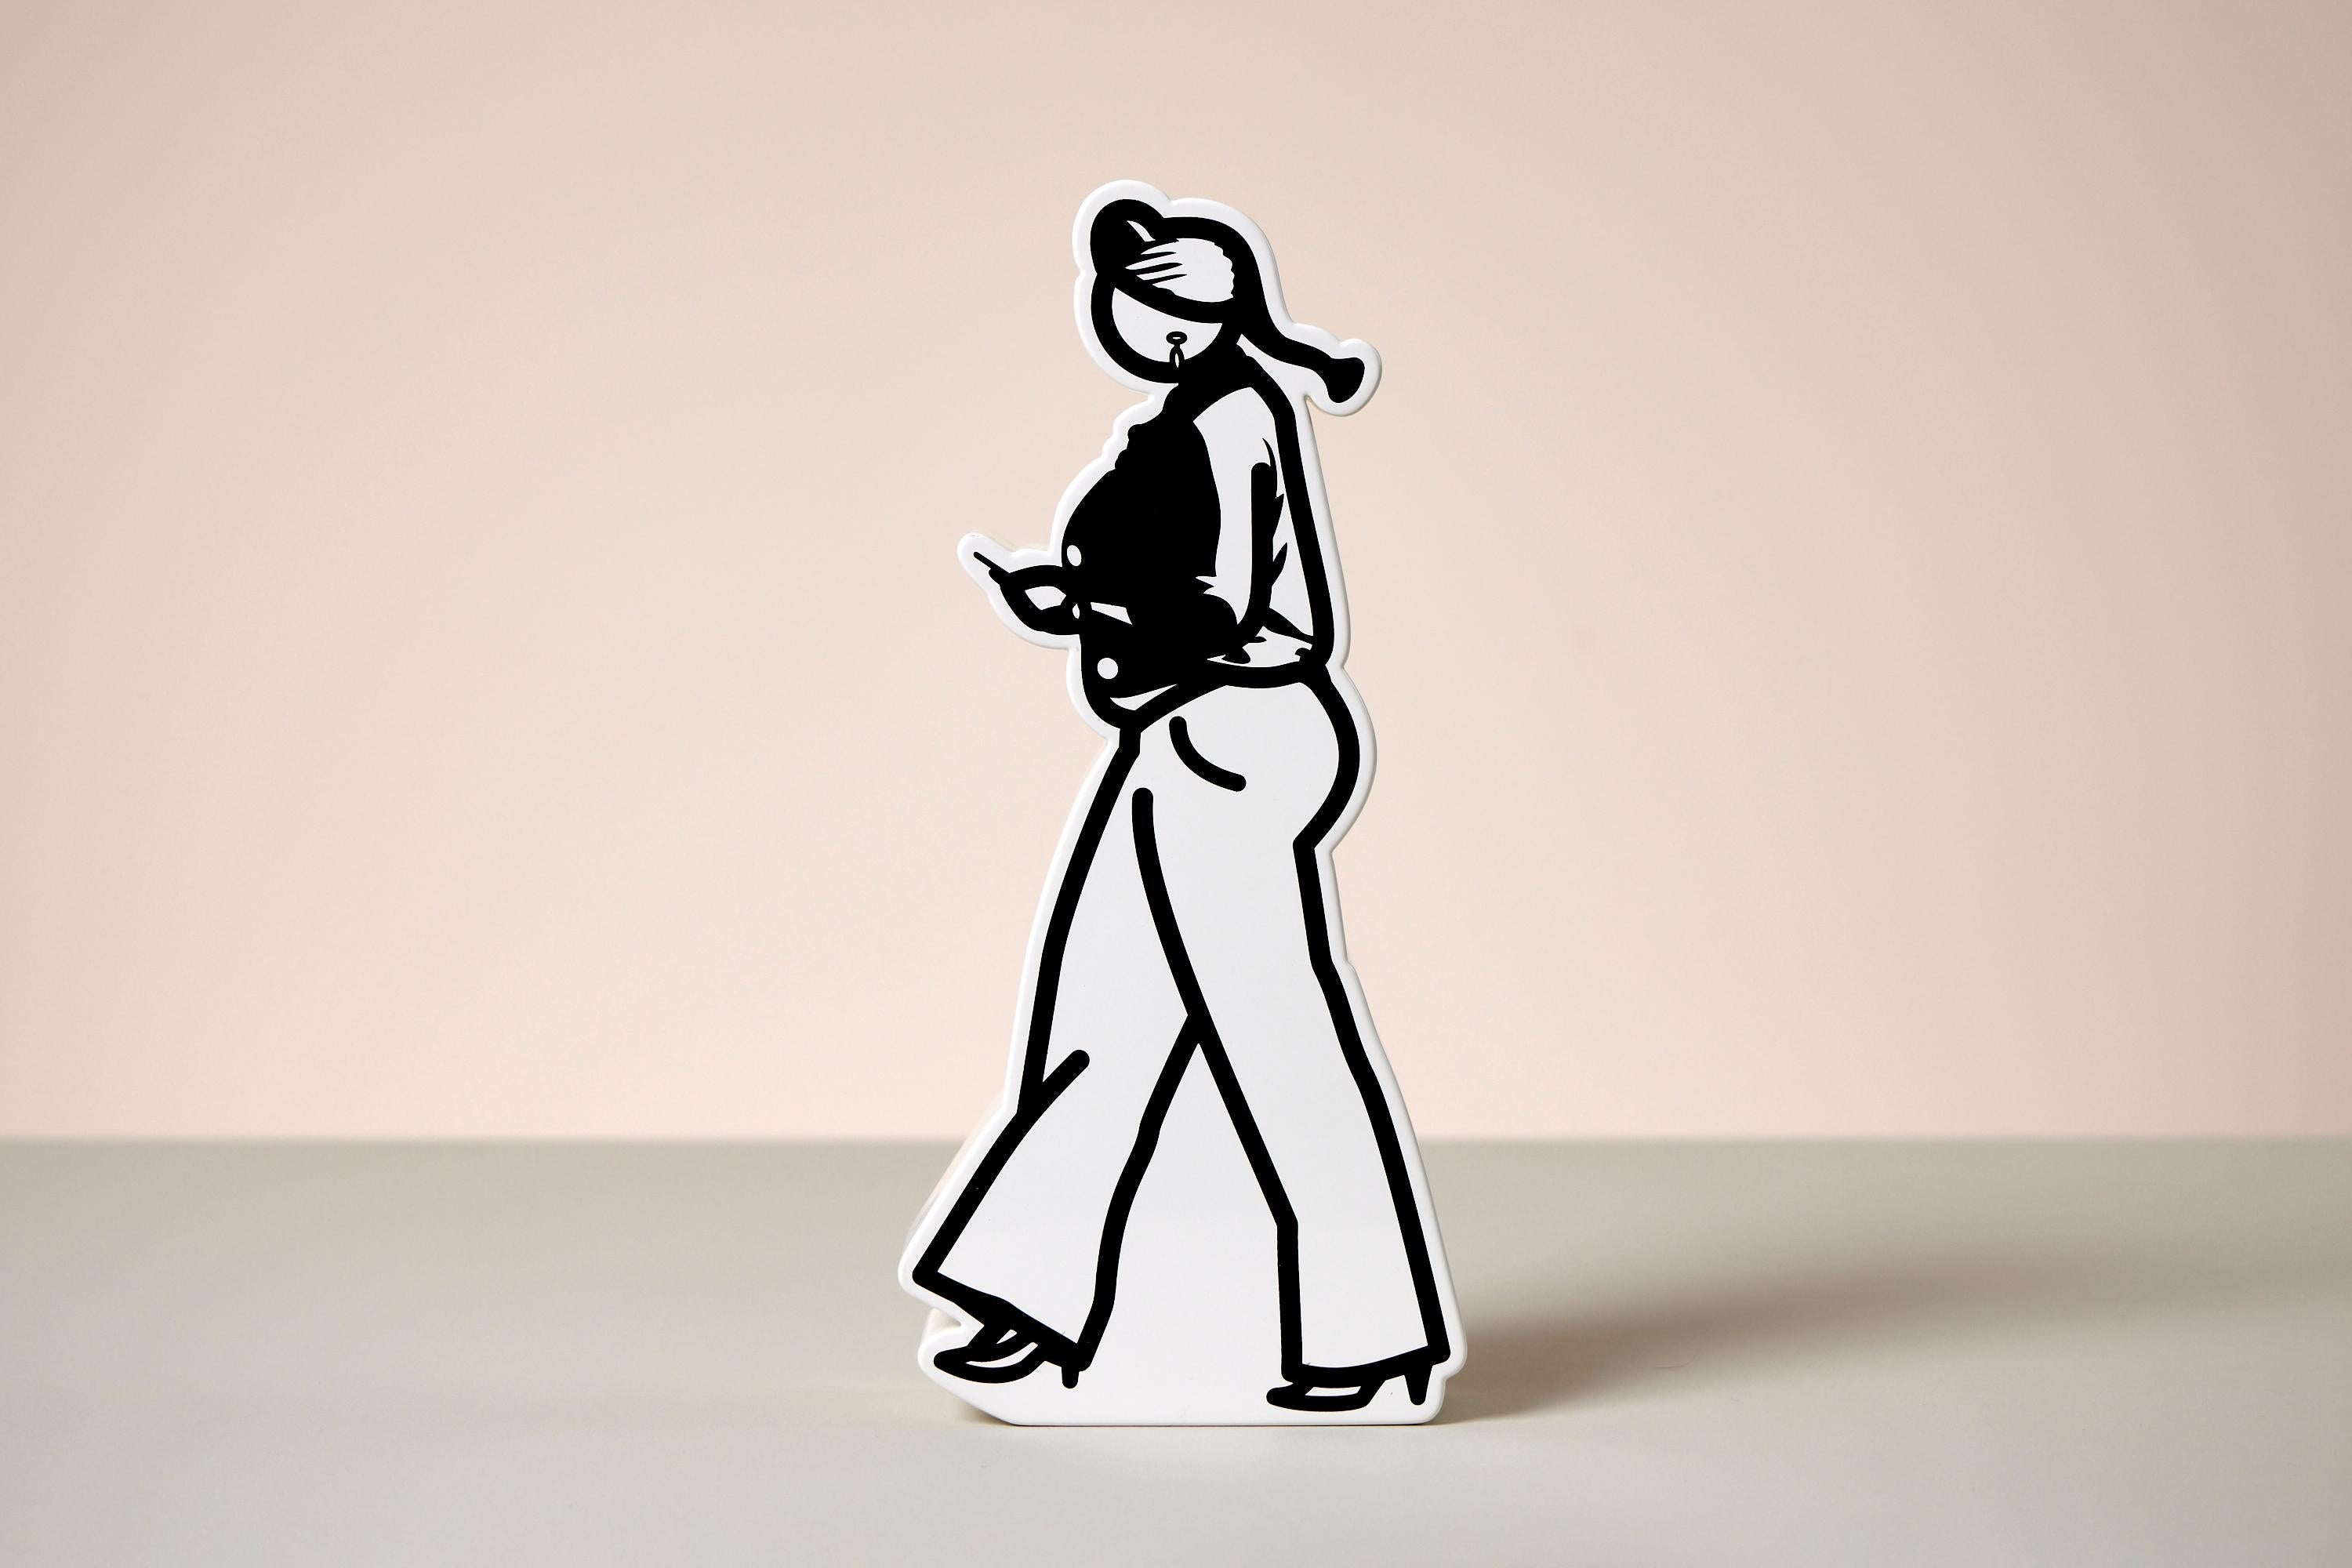 Marcher dans la ville. 6, 2012
Julian Opie

Sculpture sérigraphiée sur un bloc de forme Axson peint au pistolet
Signé et numéroté à l'encre noire sur la base de l'édition de 25 exemplaires.
Imprimé par Advanced Graphics, Londres
Publié par Alan